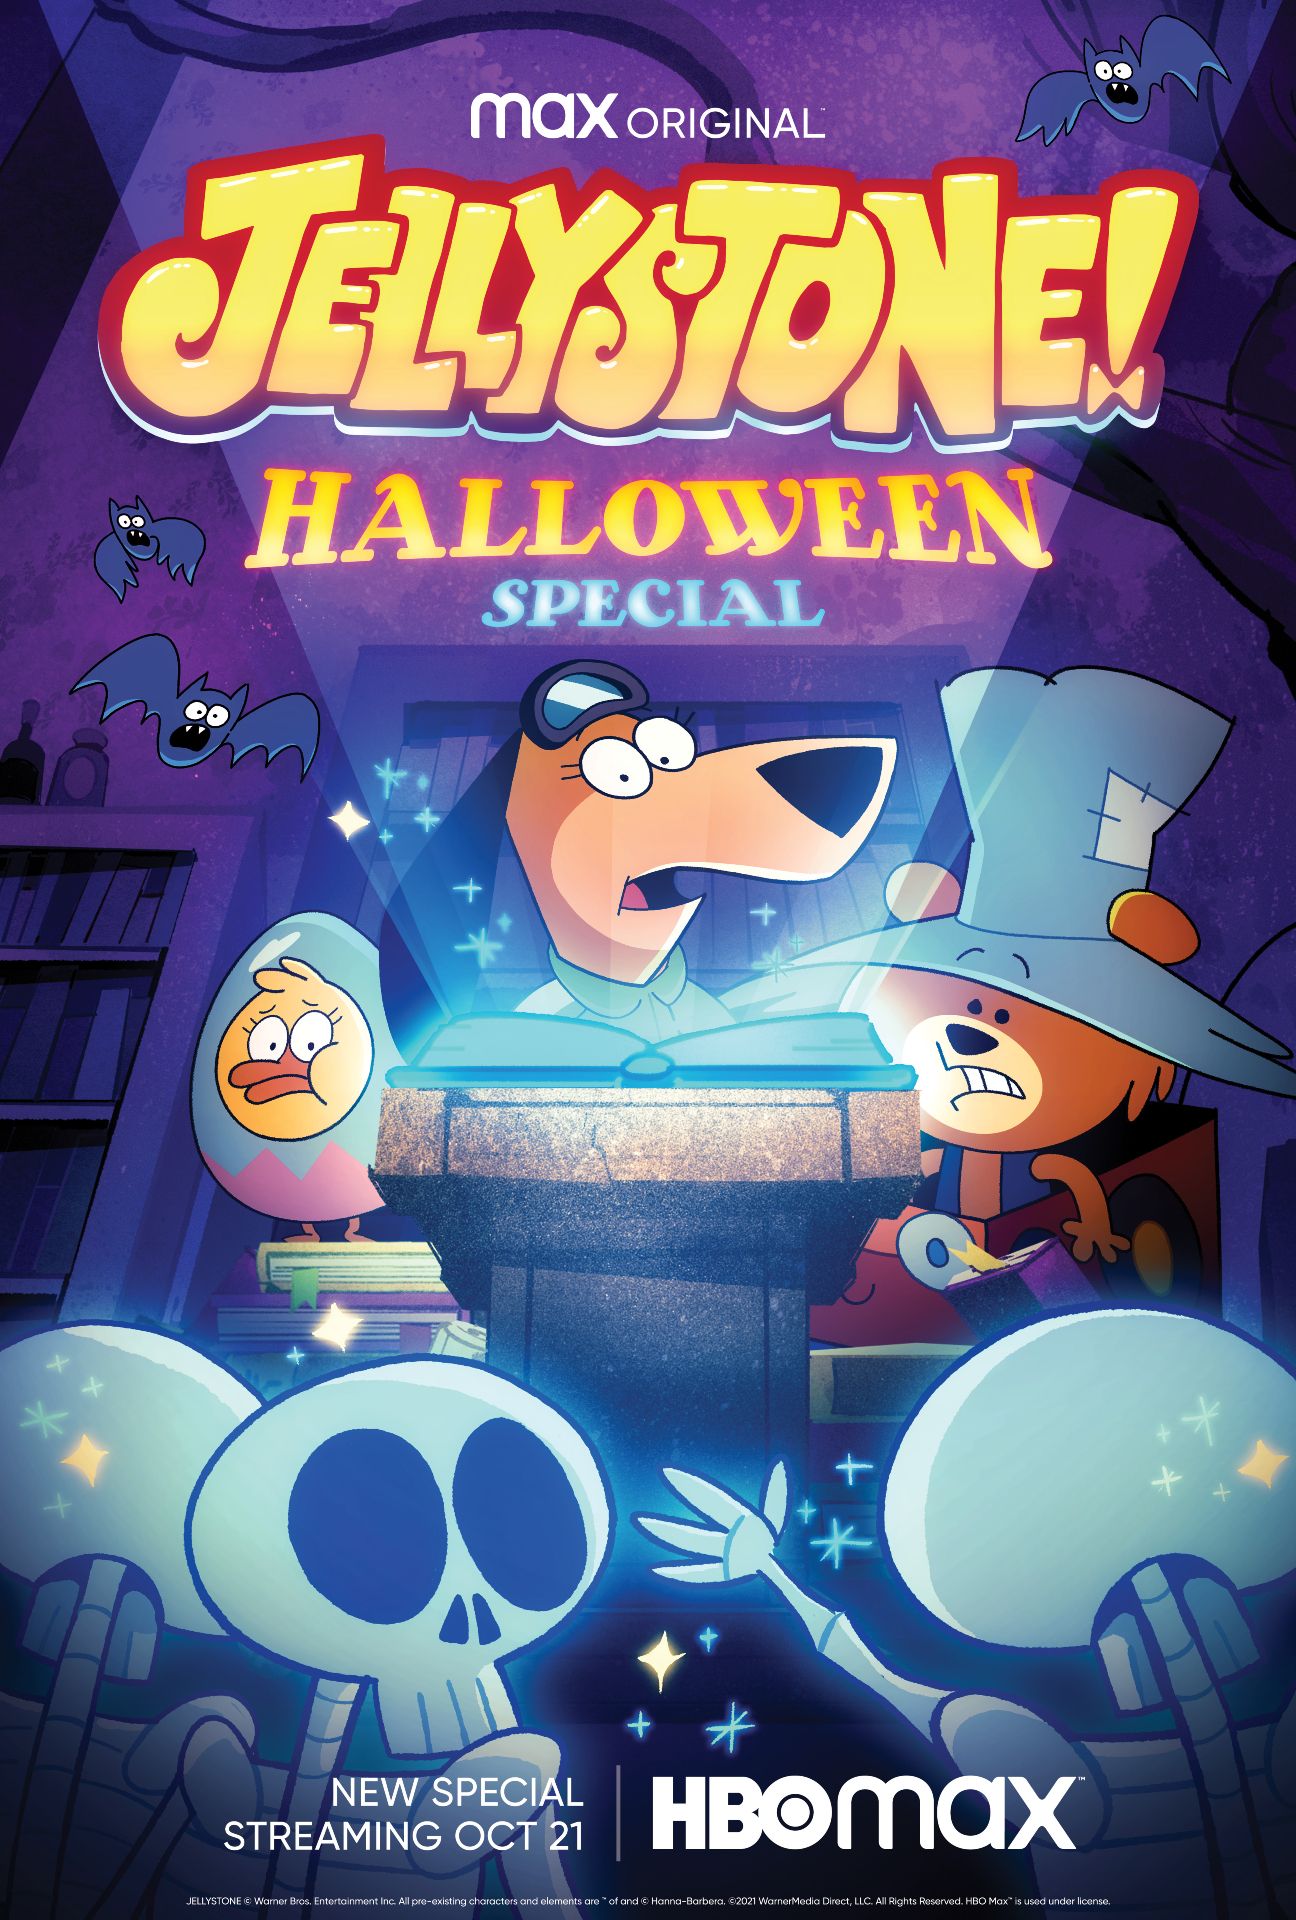 Jellystone! Halloween Special Clip Yogi Bear & Friends Sing Spooky